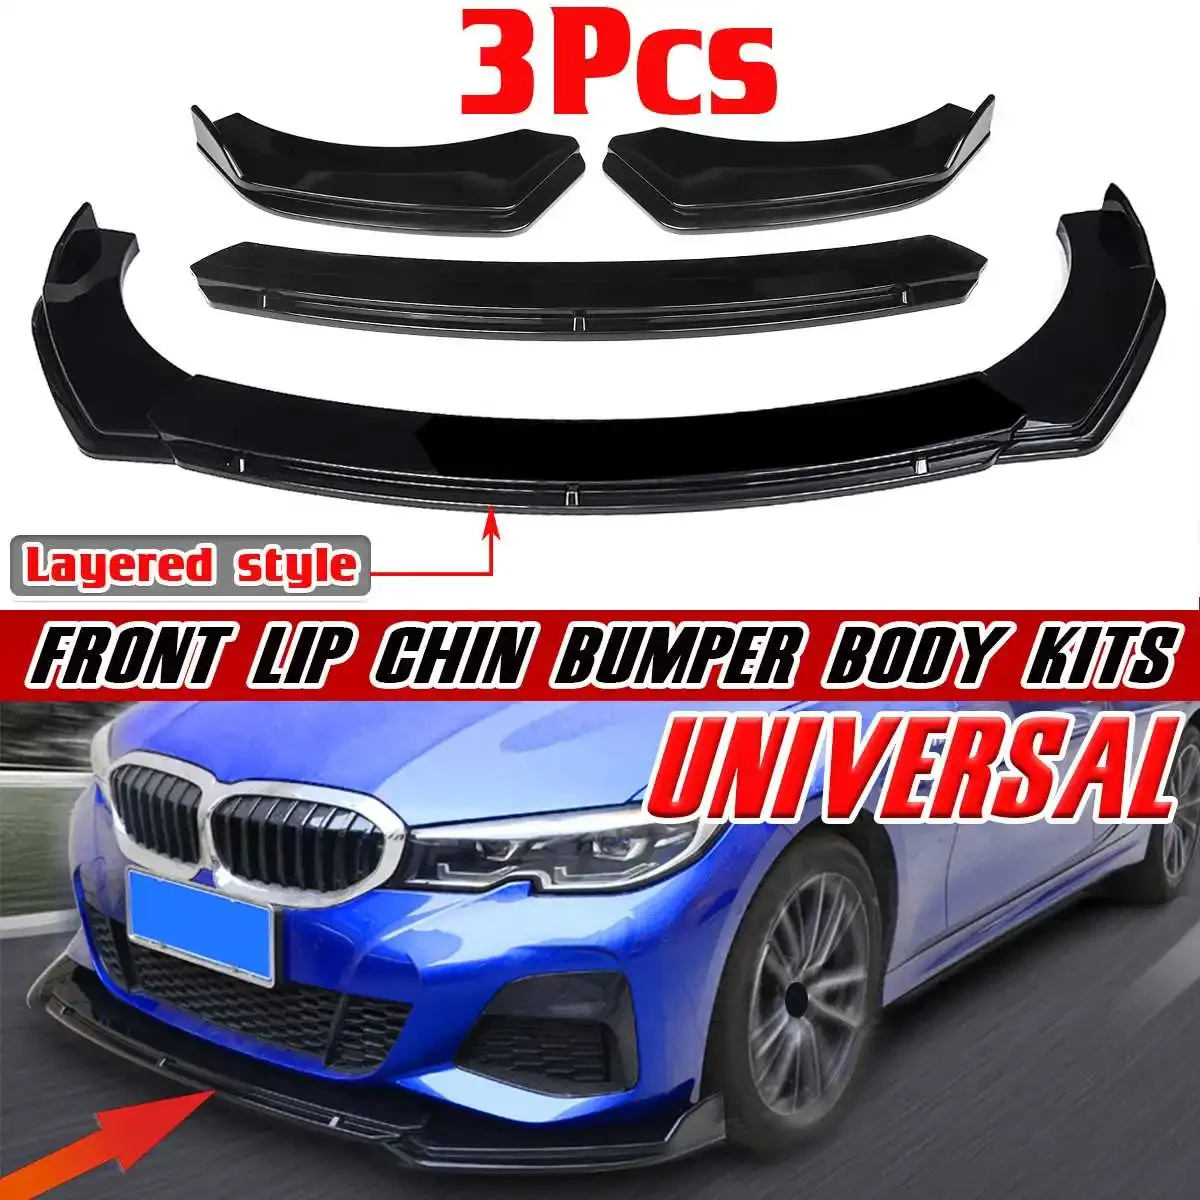 

3PCS Universal Car Front Bumper Lip Diffuser For BMW X5 E70 F20 E90 E53 G20 G30 E90 E91 E92 E93 F30 F80 F32 F82 E60 E61 Body Kit